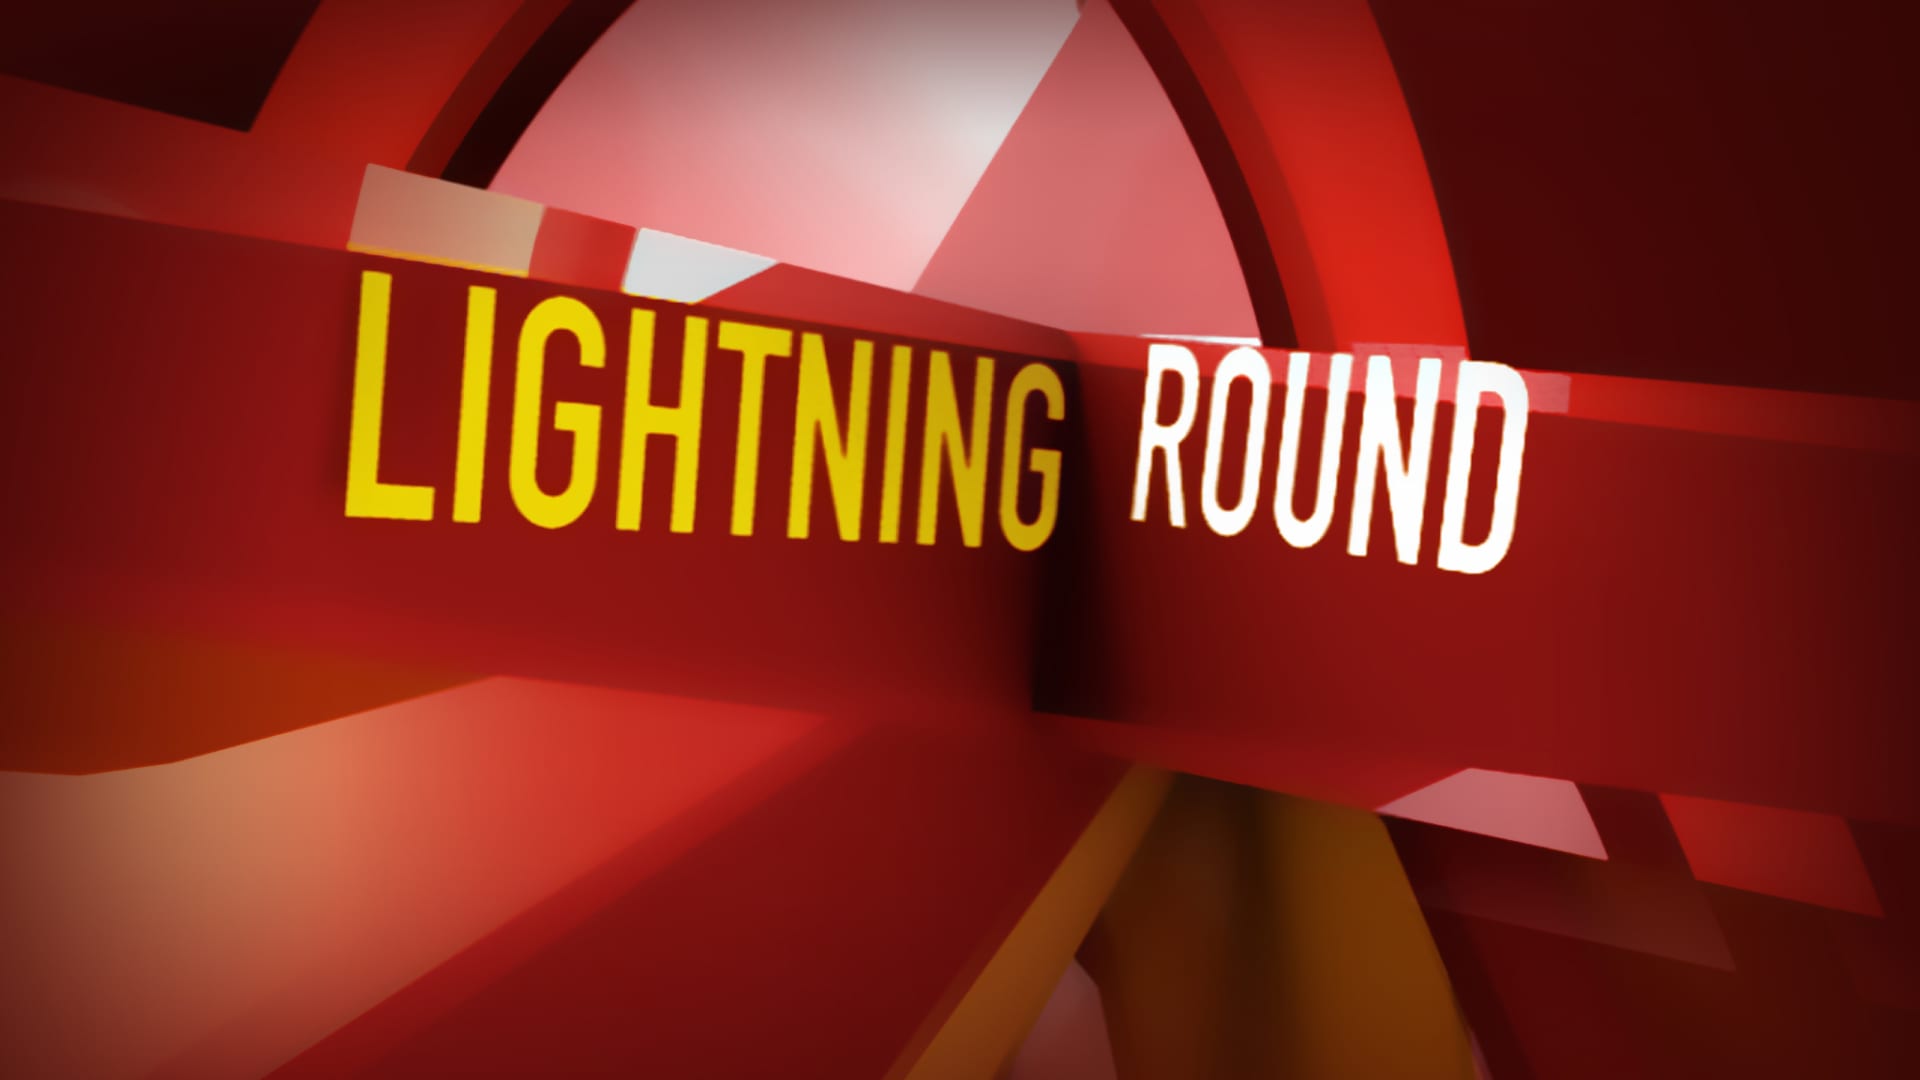 Cramer’s lightning round: nLight is not a buy